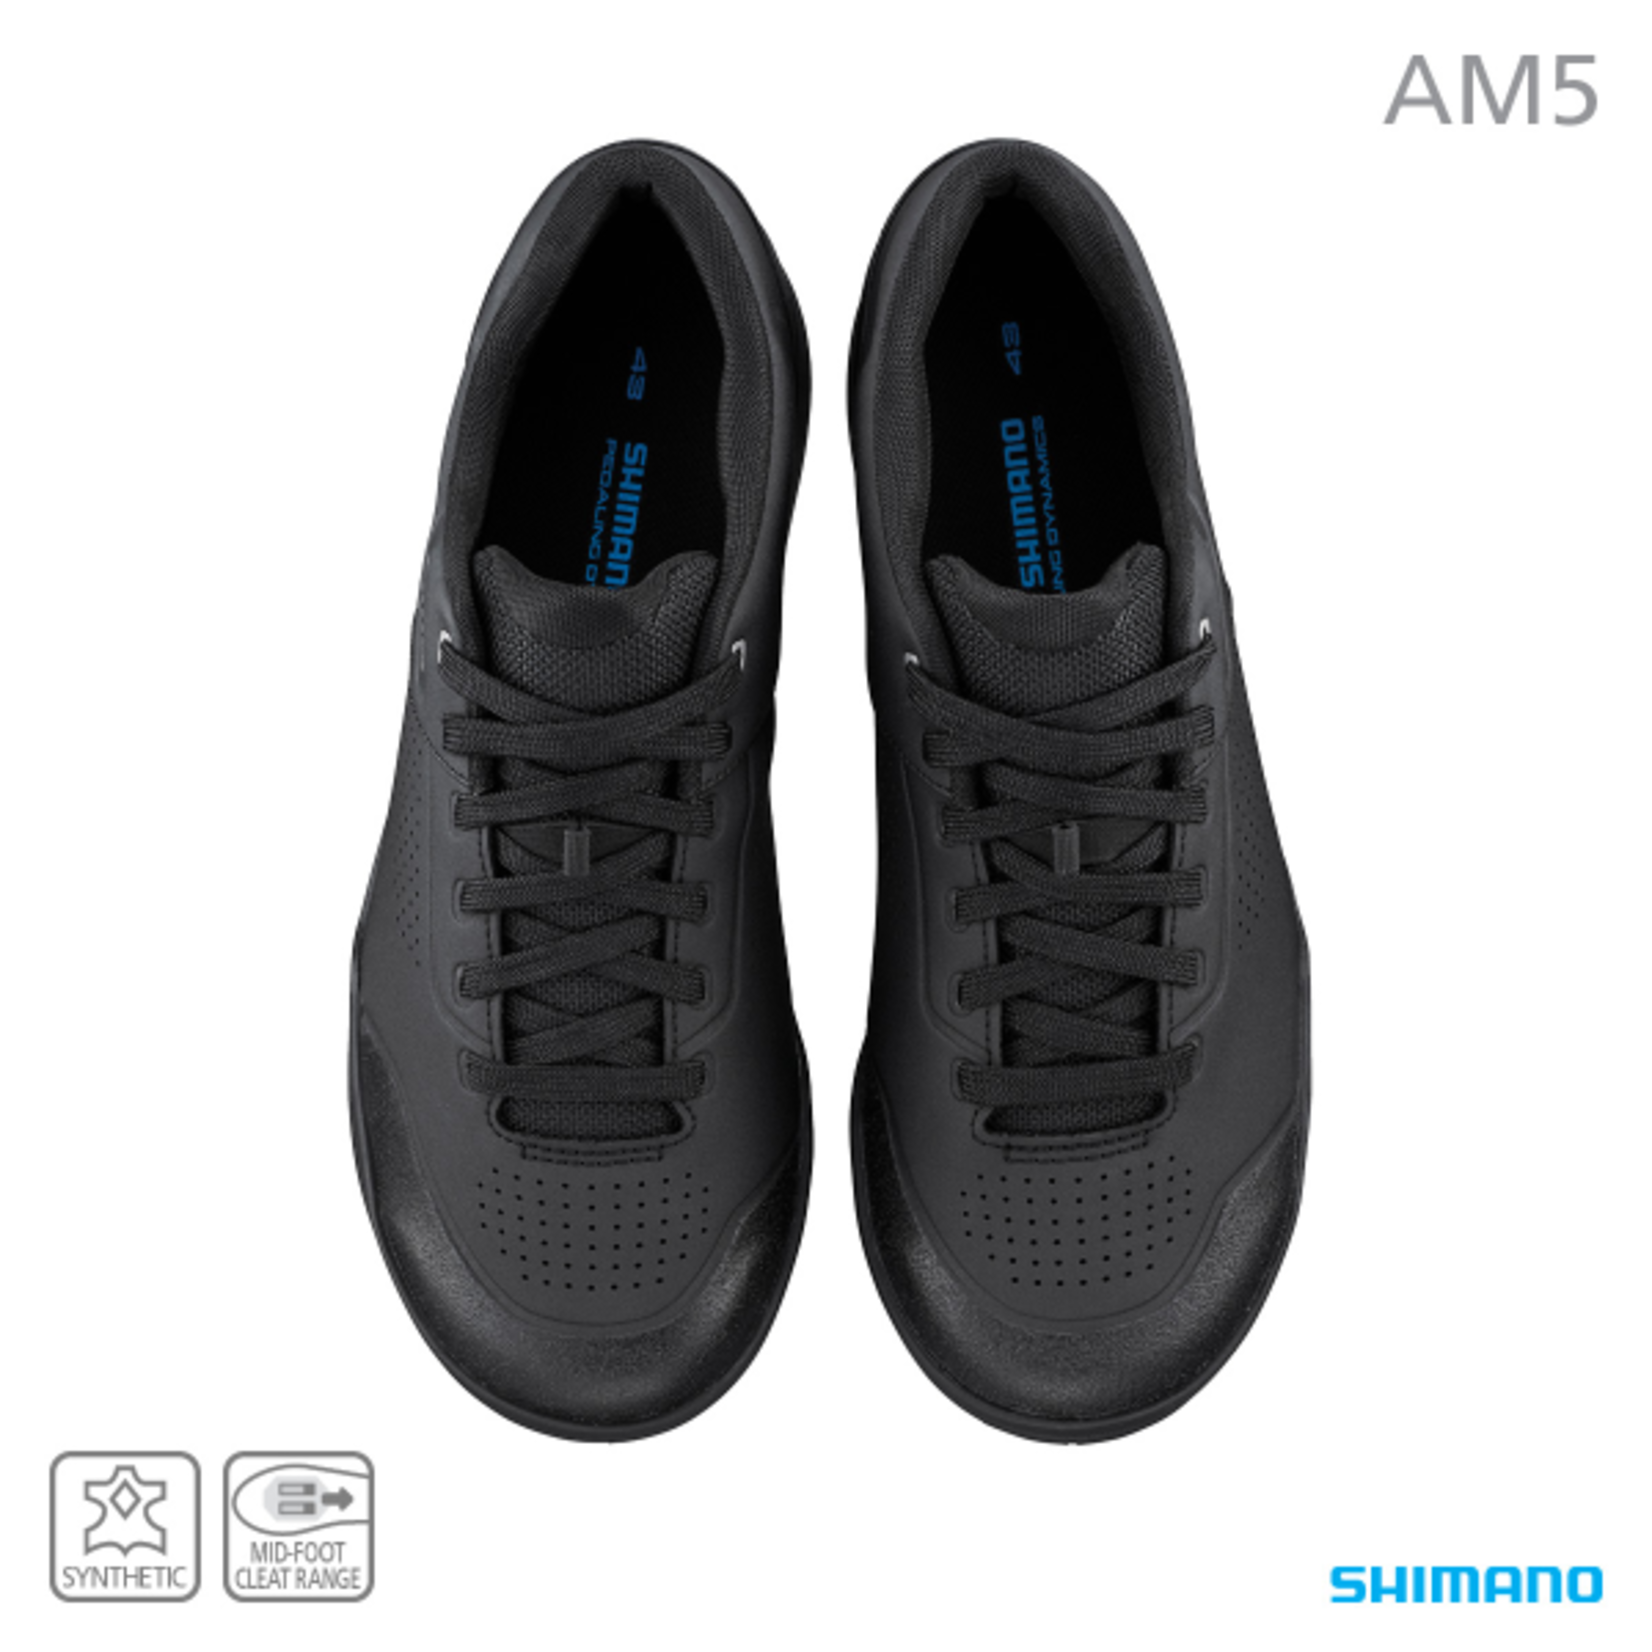 Shimano Shimano Bike/Cycling Shoe SH-AM503 Freeride Shoe - Size 46 - Synthetic Leather